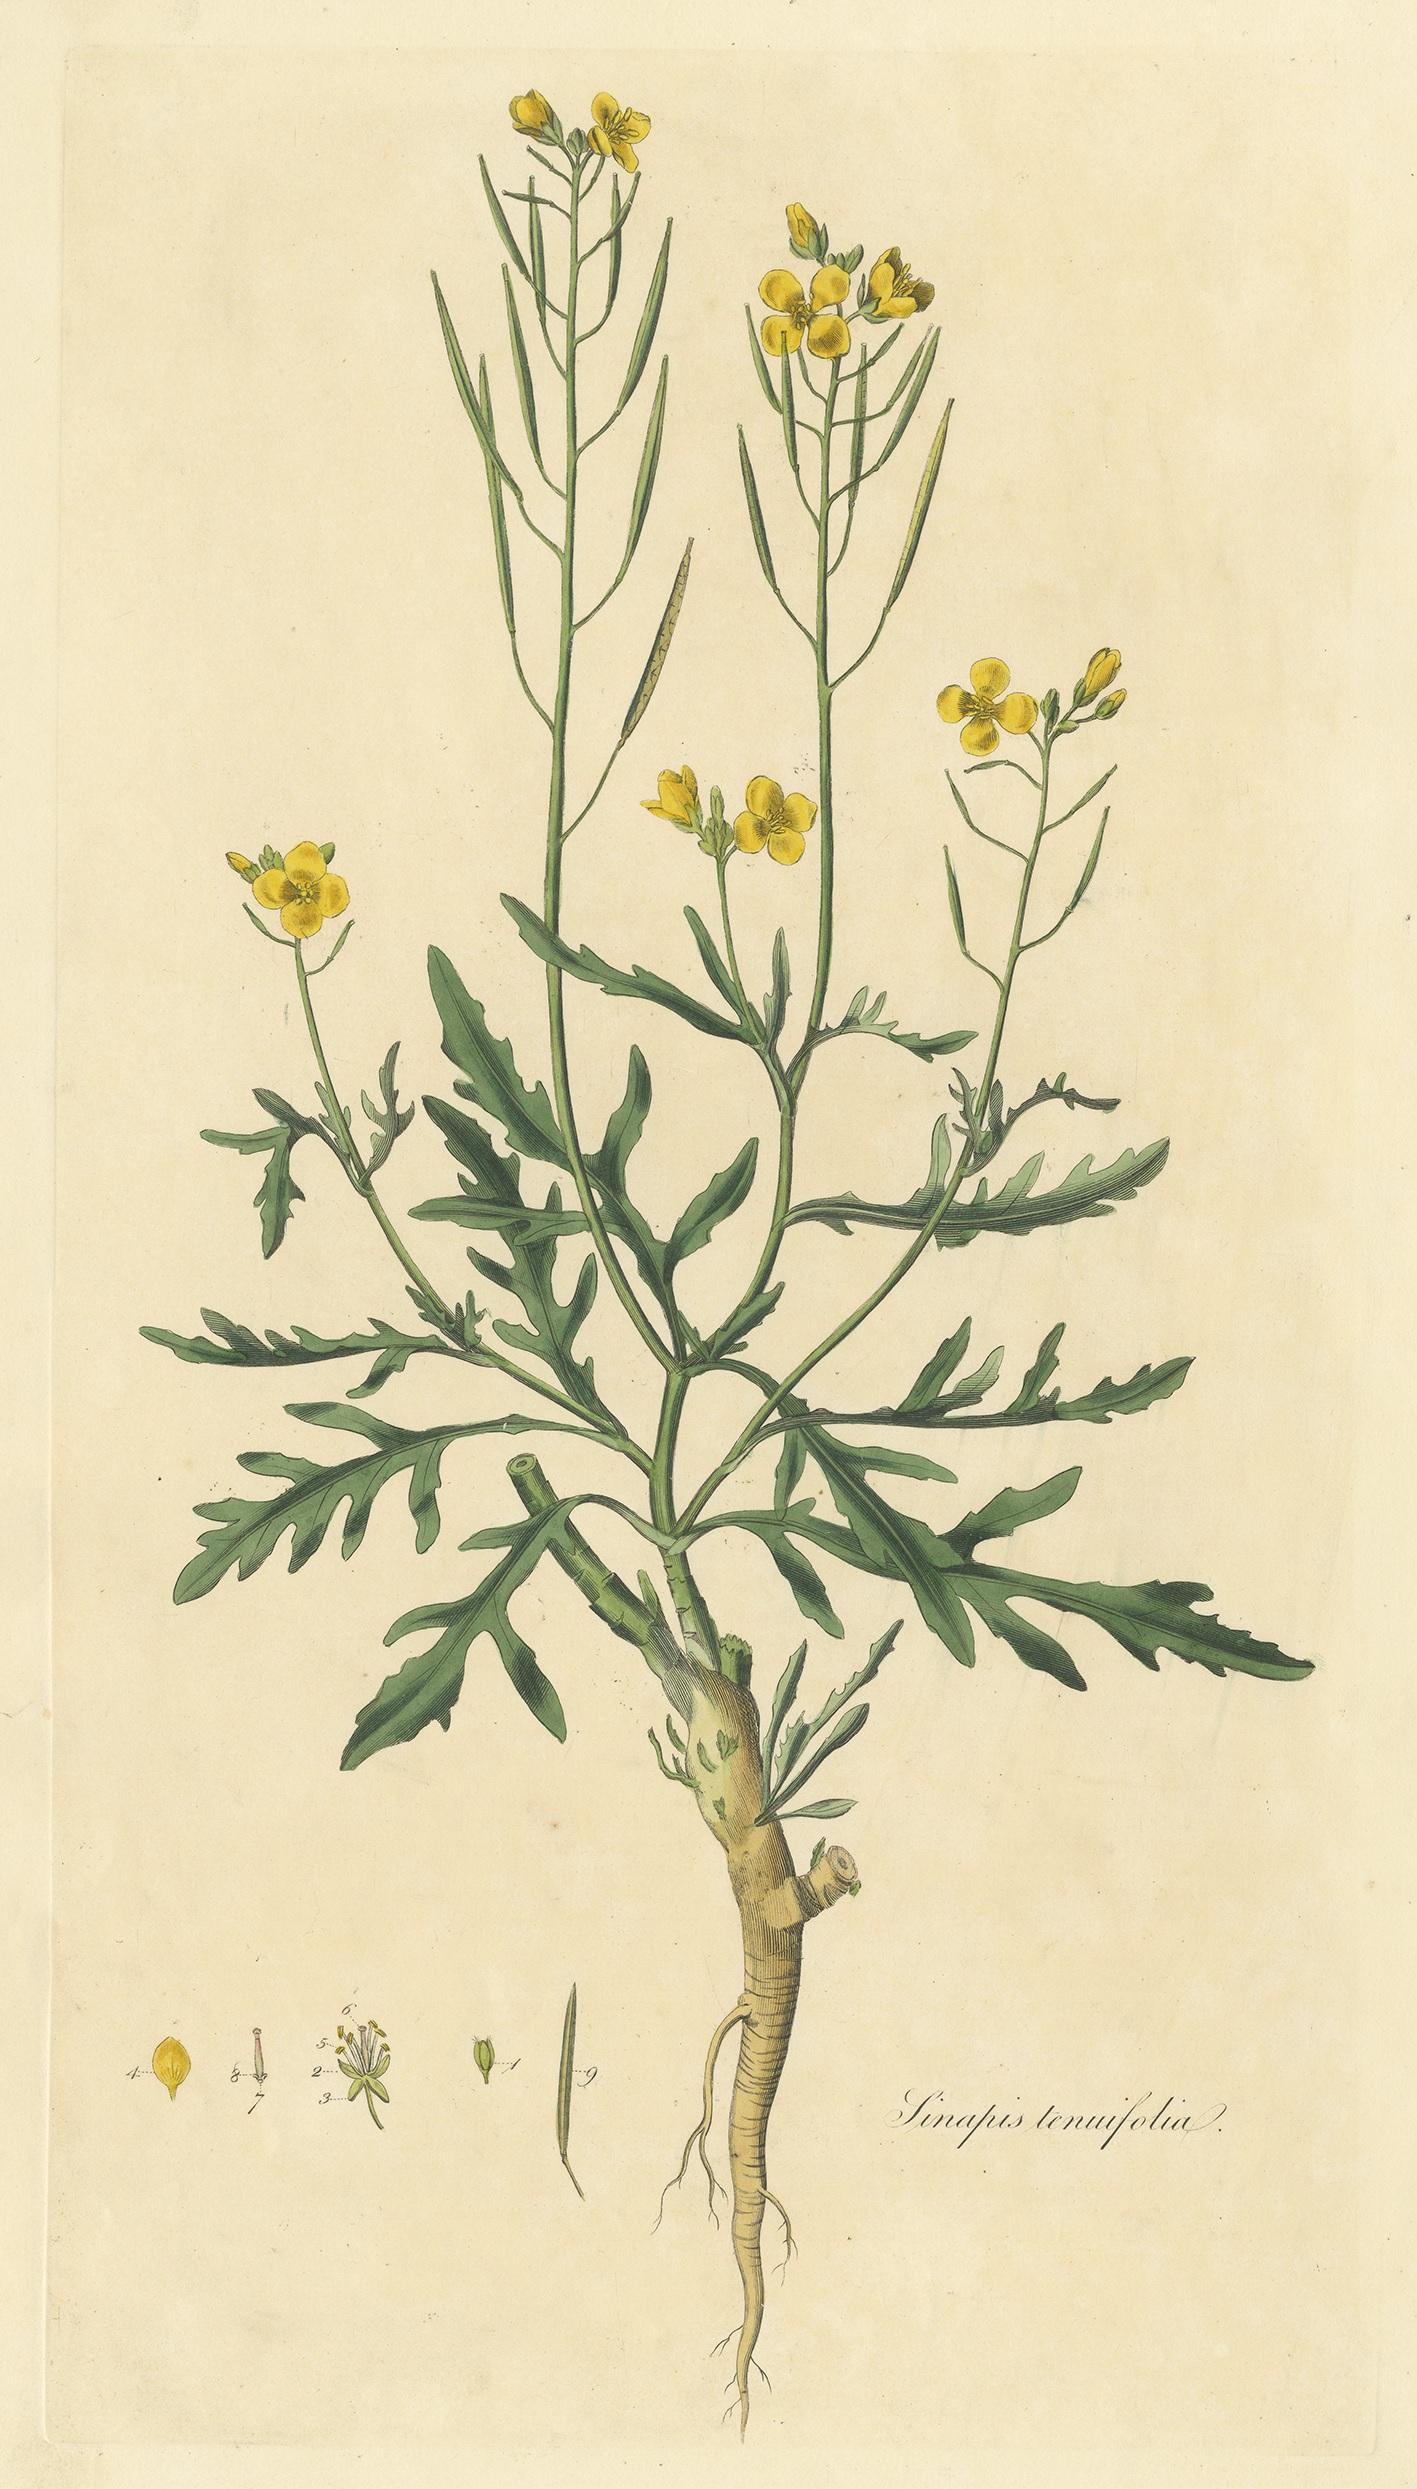 Gravure botanique ancienne intitulée 'Sinapsis Tenuifolia'. Gravure colorée à la main de diplotaxis tenuifolia, également connu sous le nom de roquette sauvage et de roquette murale vivace. Cette estampe provient de 'Flora Londinensis' de William